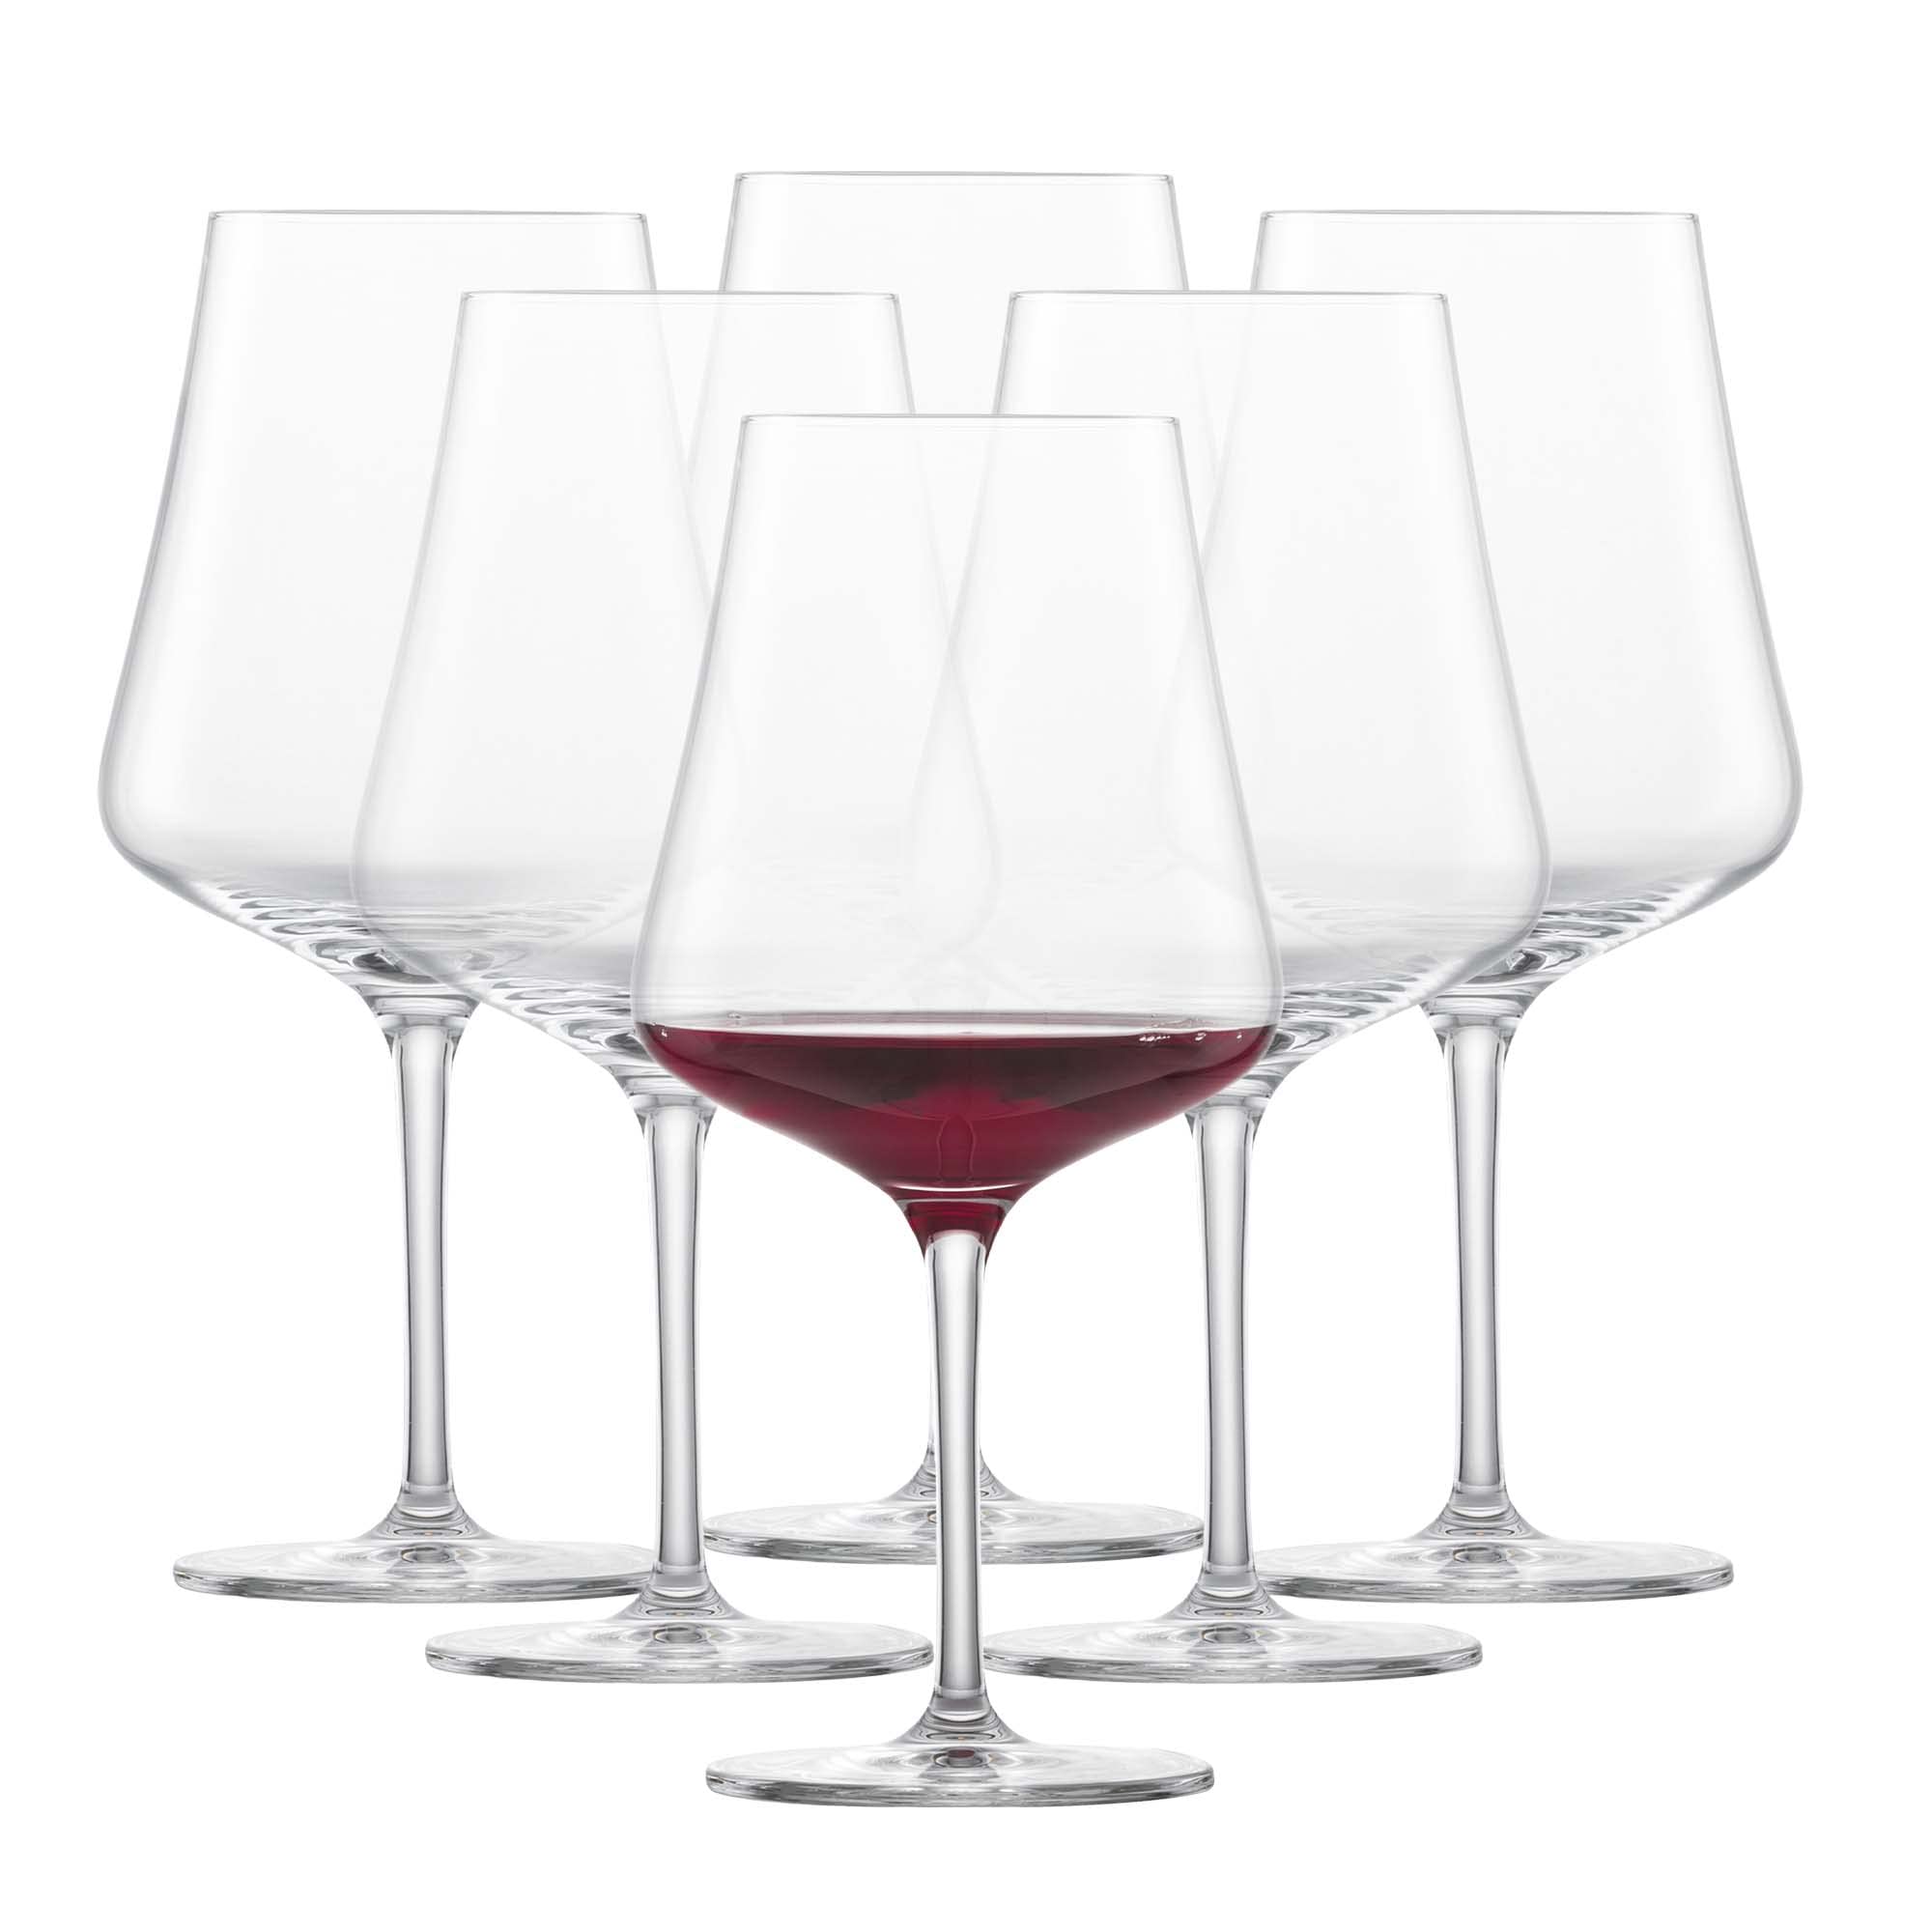 SCHOTT ZWIESEL Burgunder Rotweinglas Fine (6er-Set), stilvolle Burgundergläser für Rotwein, spülmaschinenfeste Tritan-Kristallgläser, Made in Germany (Art.-Nr. 113769)